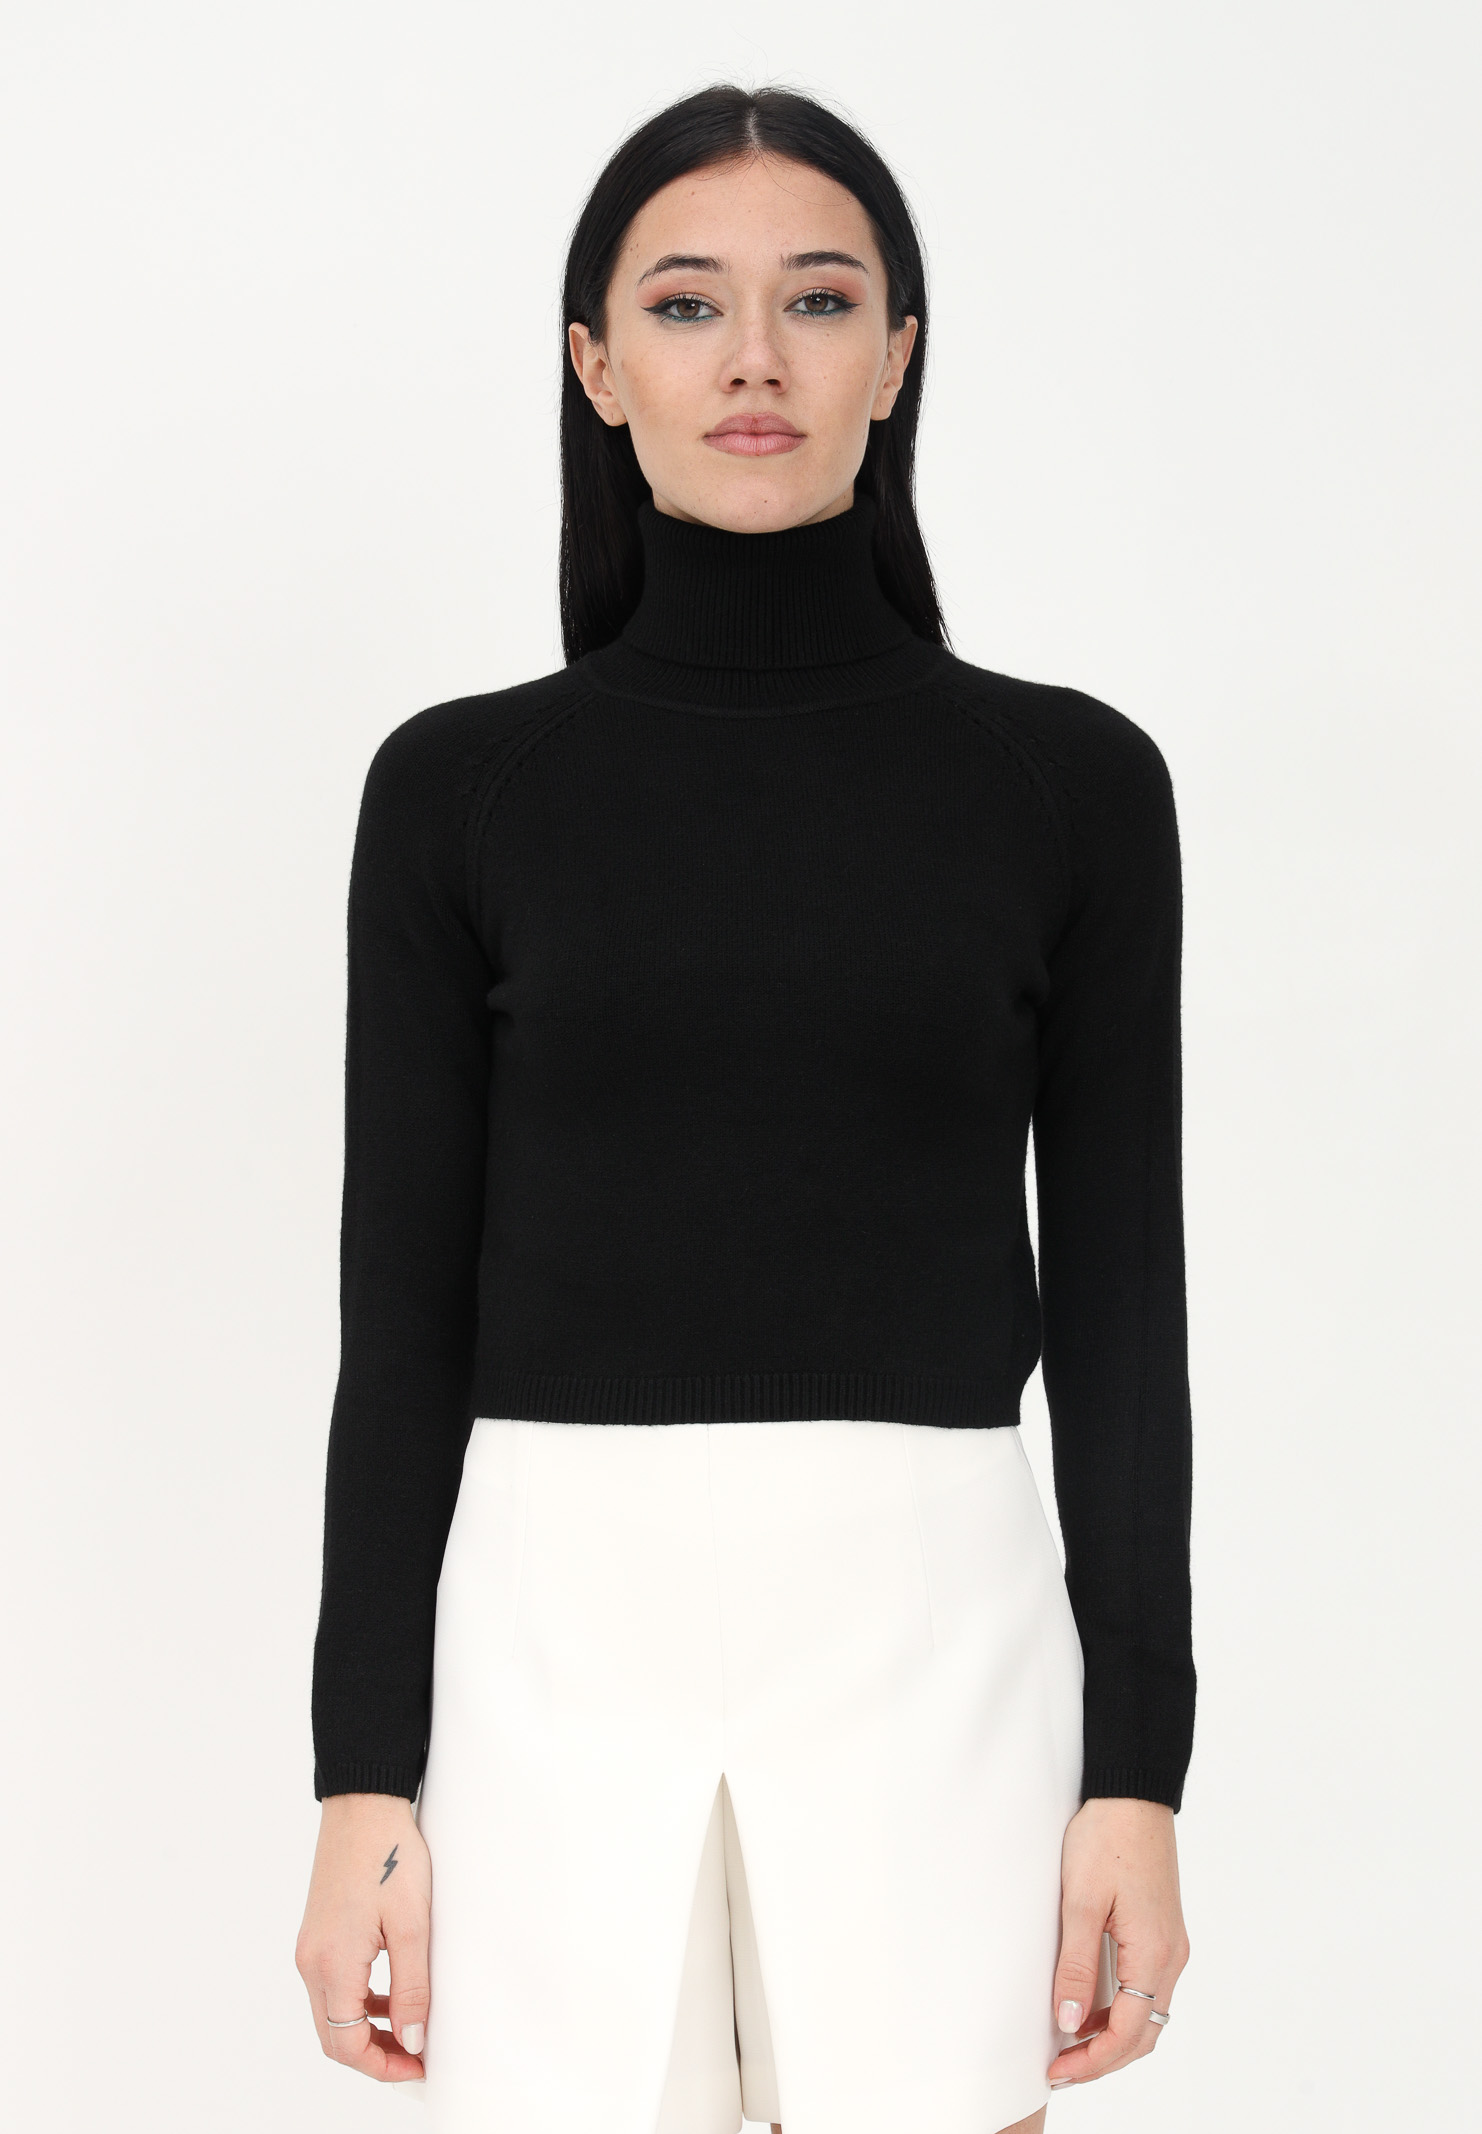 Women's black turtleneck sweater FUTURE ALIVE | FF004NERO